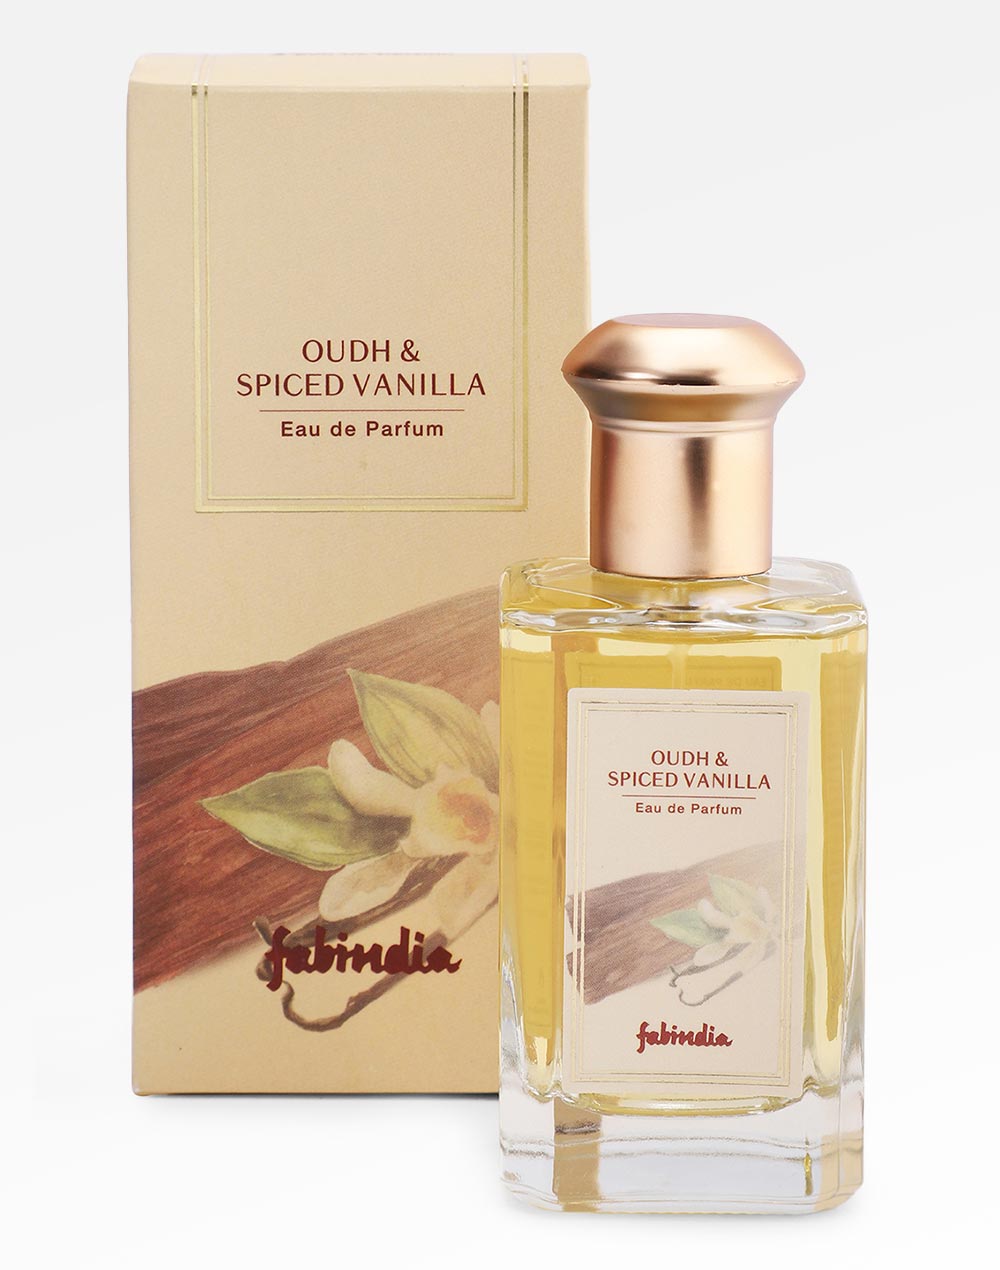 Fabindia Oudh & Spiced Vanilla Eau de Parfum - 100 ml